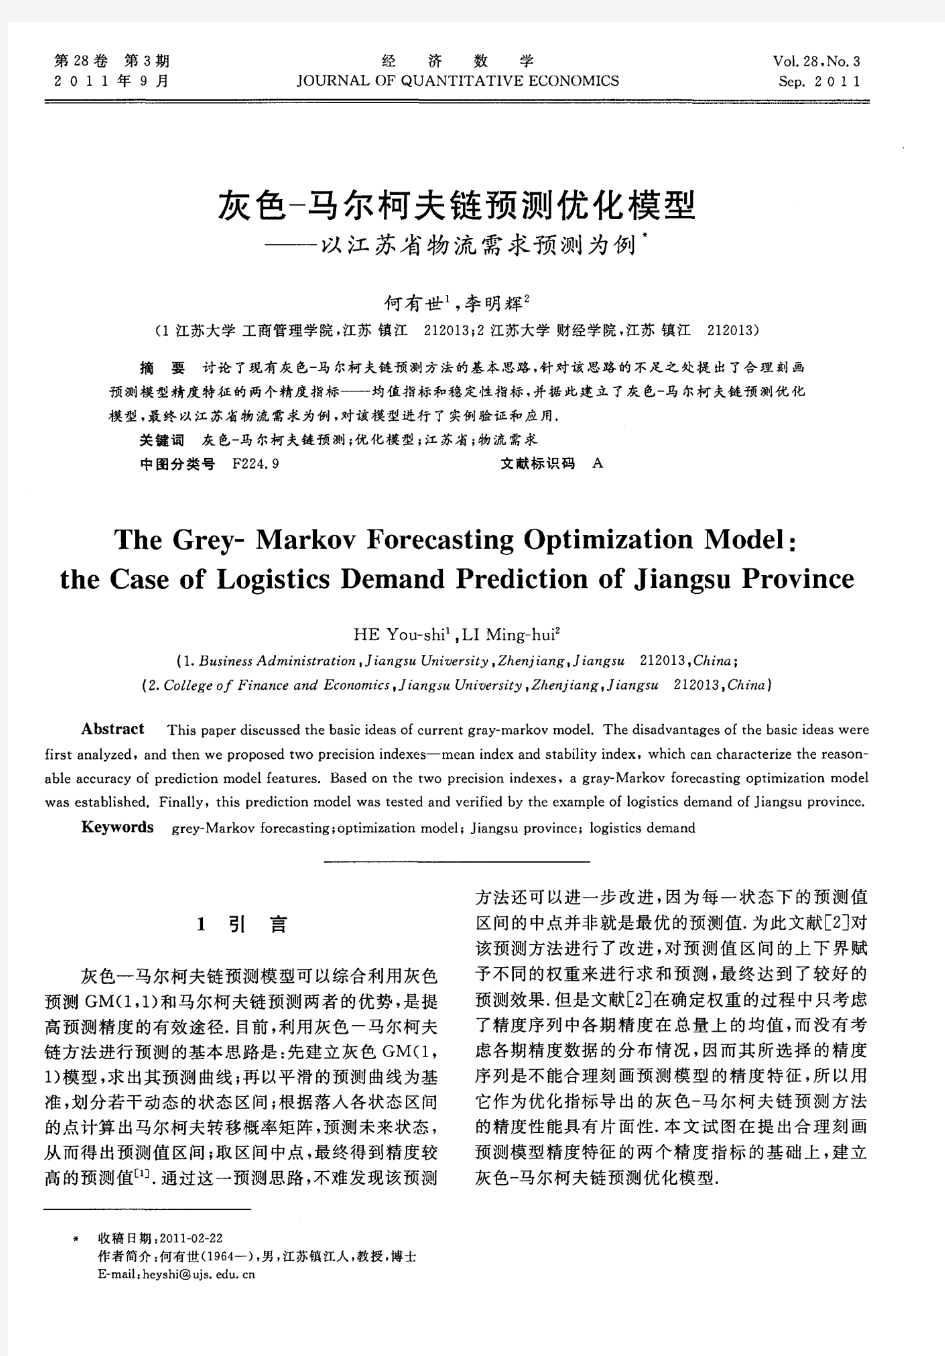 灰色-马尔柯夫链预测优化模型——以江苏省物流需求预测为例